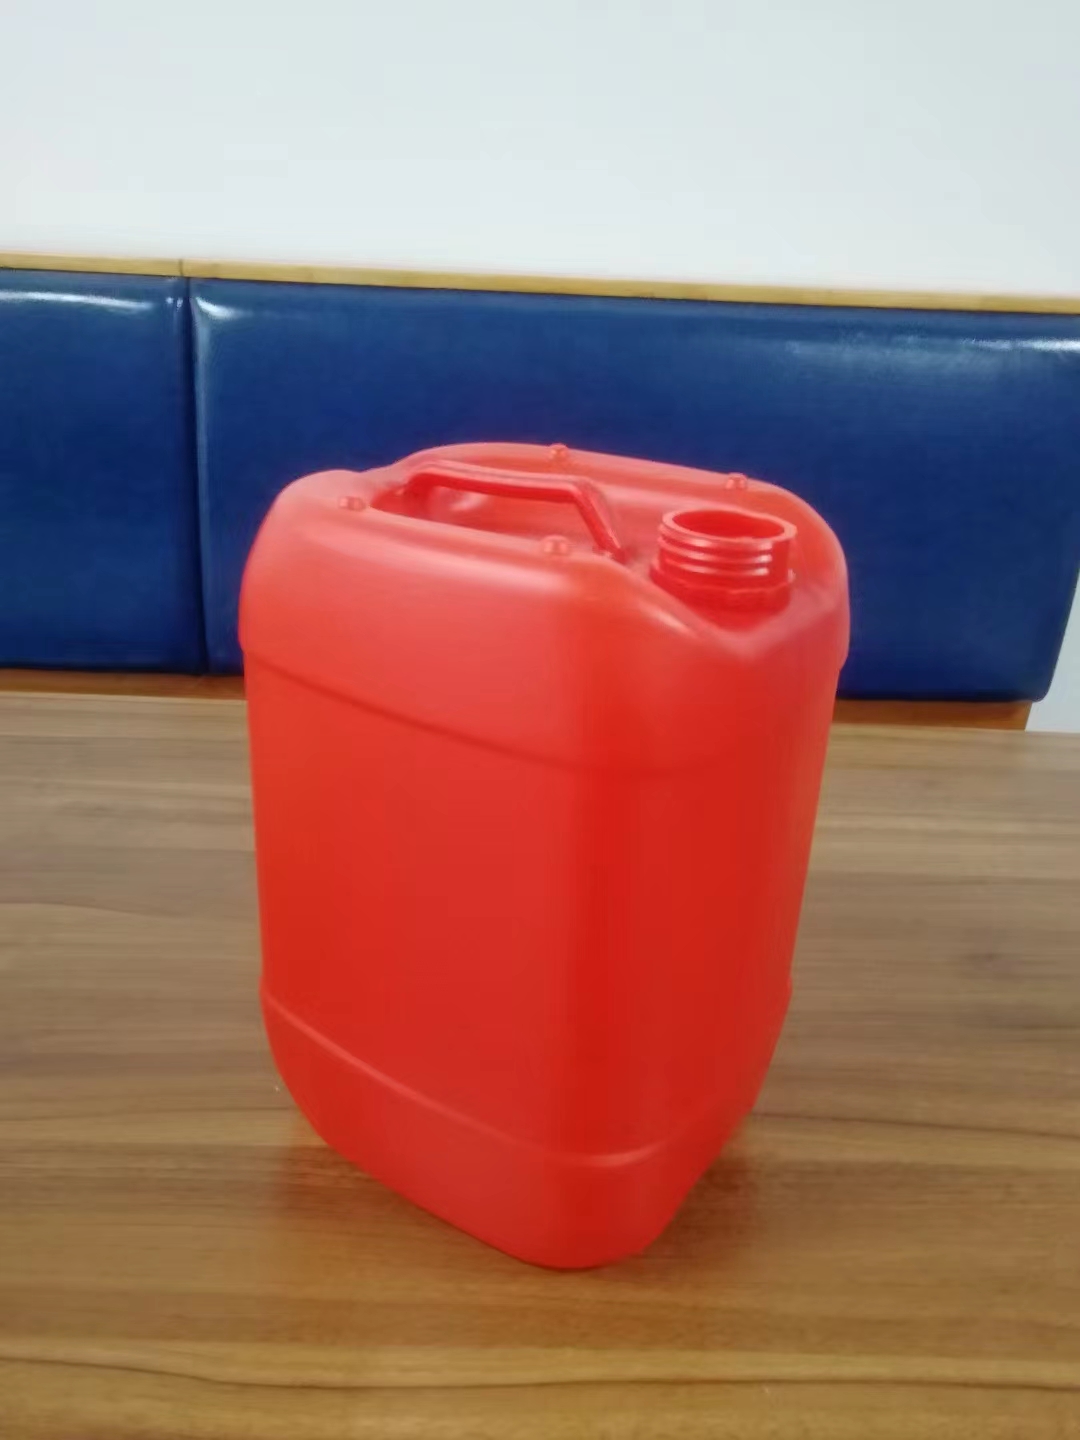 20升塑料桶堆码桶20公斤化工储罐包装桶尿素液桶